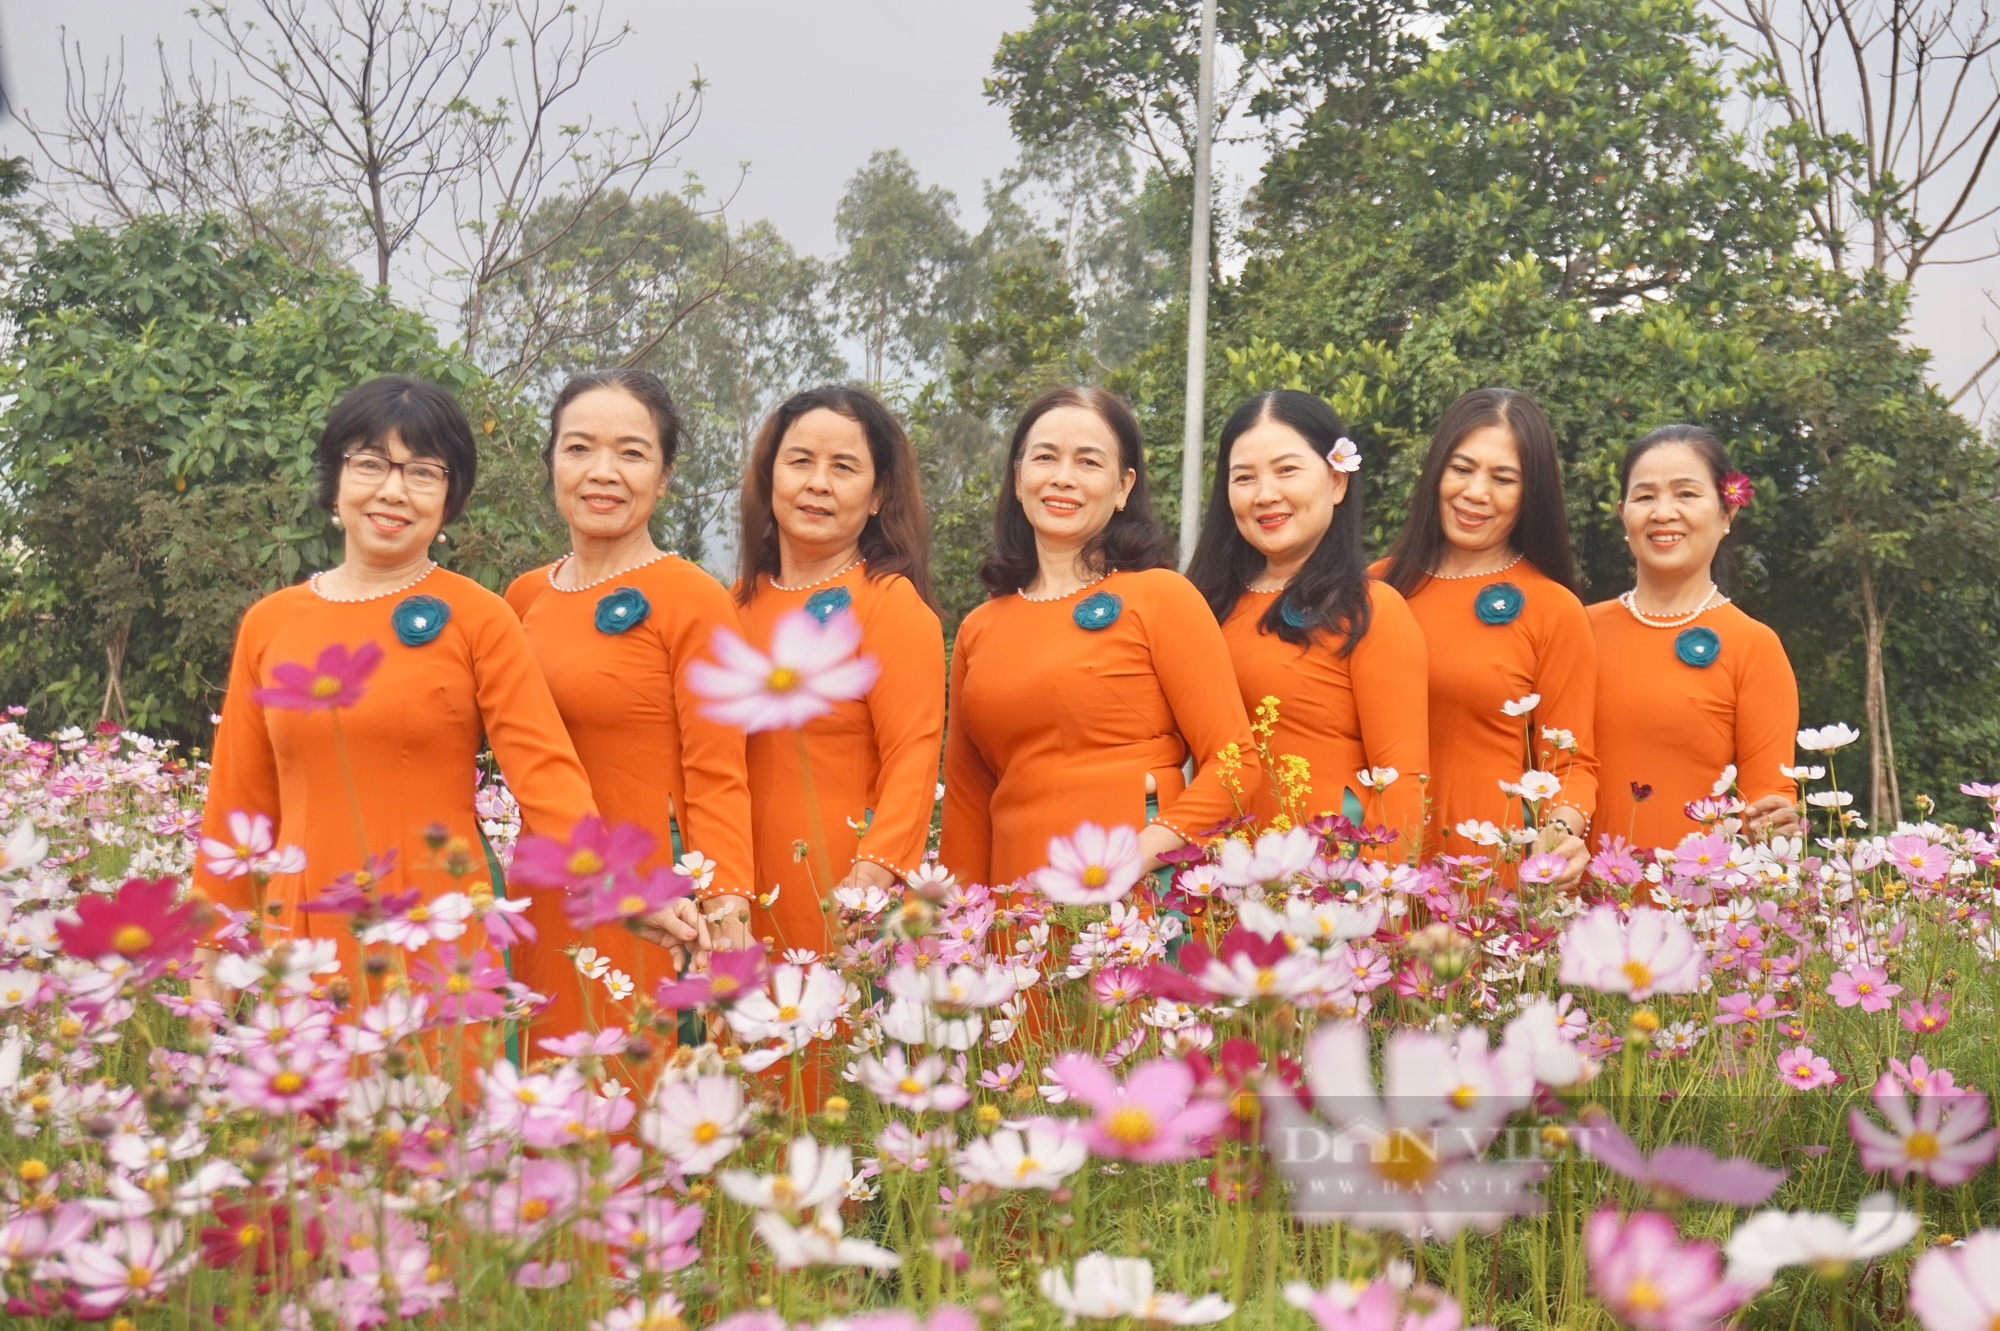 Giữa lòng Đà Nẵng có một vườn “hoa báo đông” làm chị em mê tít, xúng xích kéo về chụp ảnh - Ảnh 4.